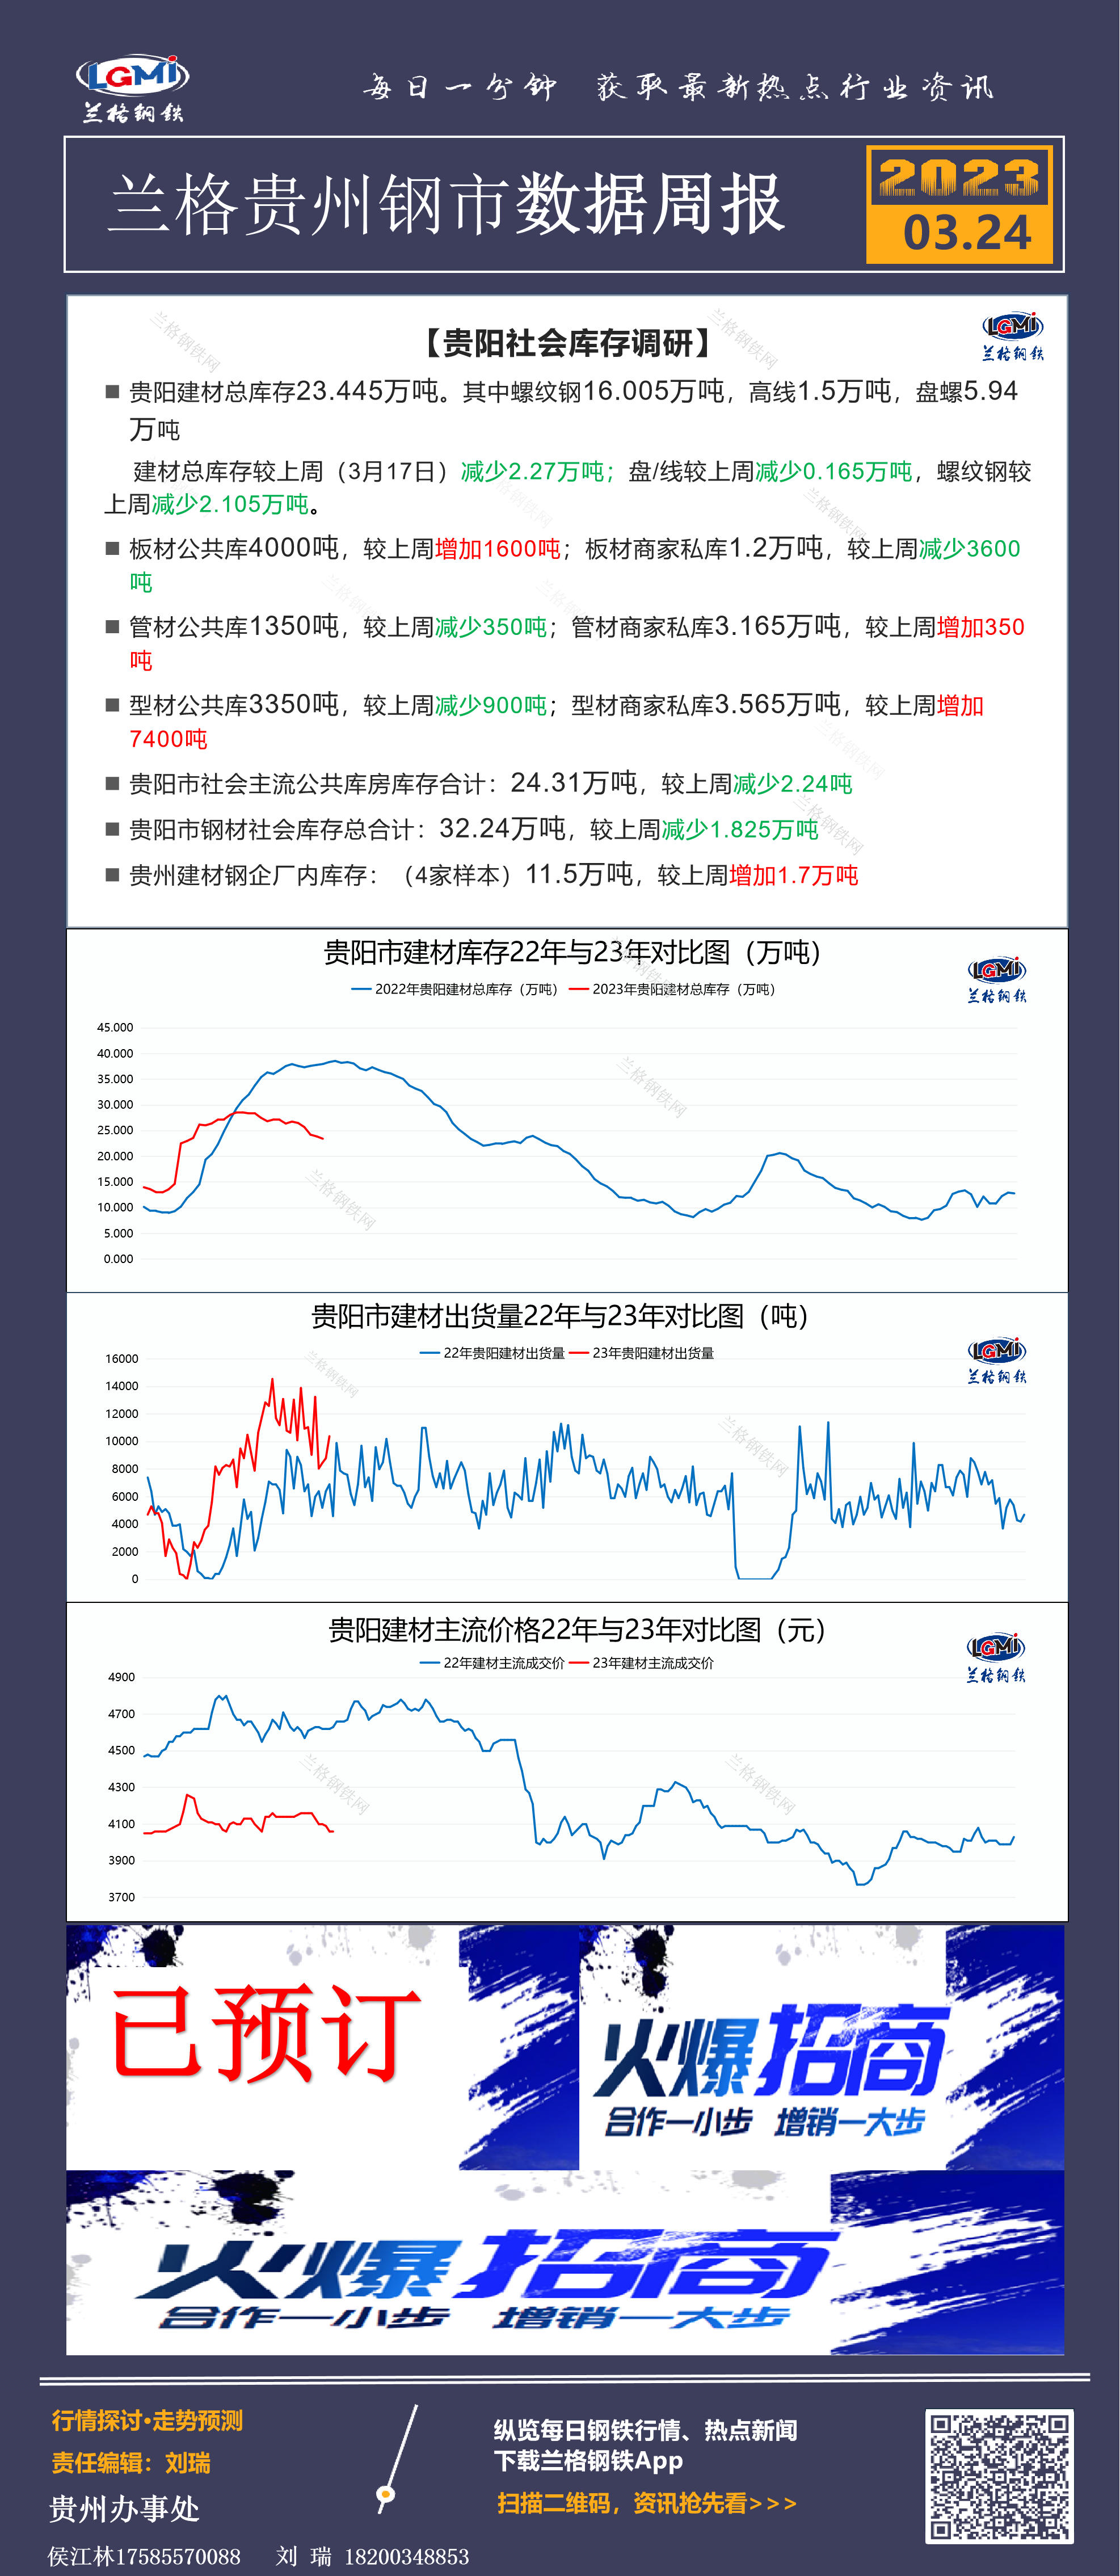 贵州钢市数据周报3.2